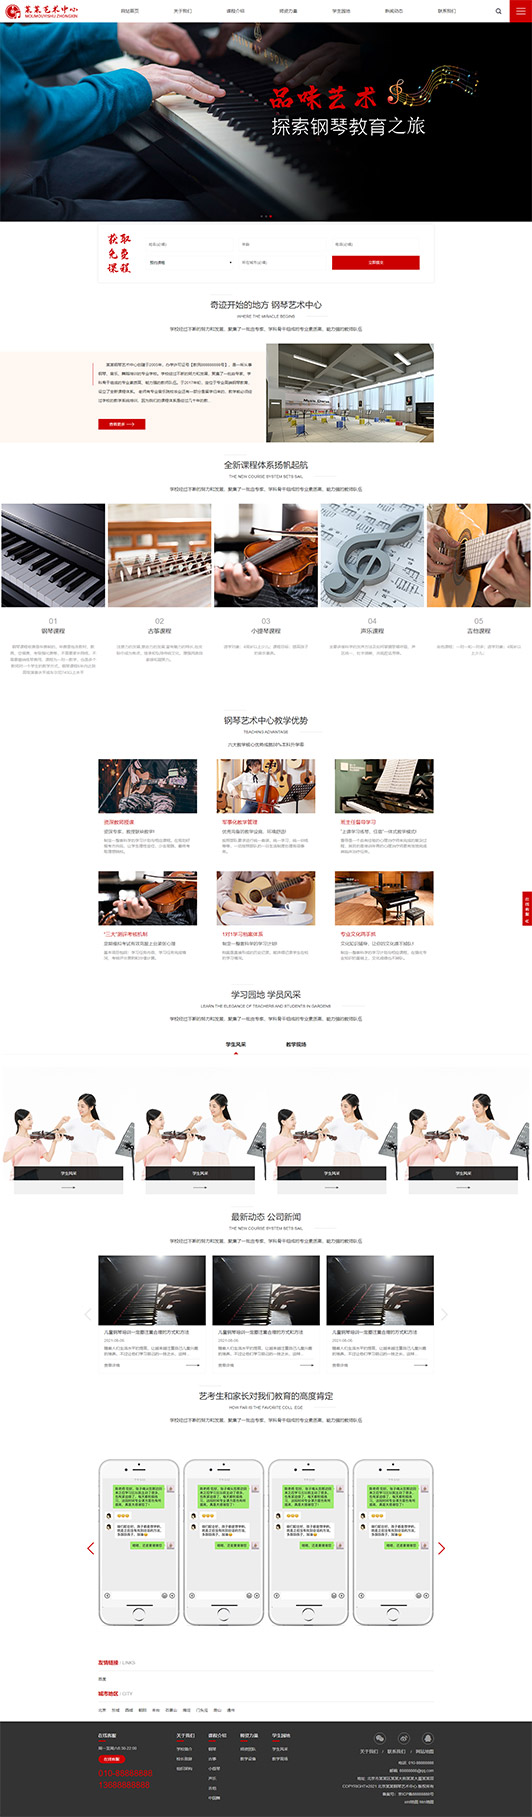 晋城钢琴艺术培训公司响应式企业网站